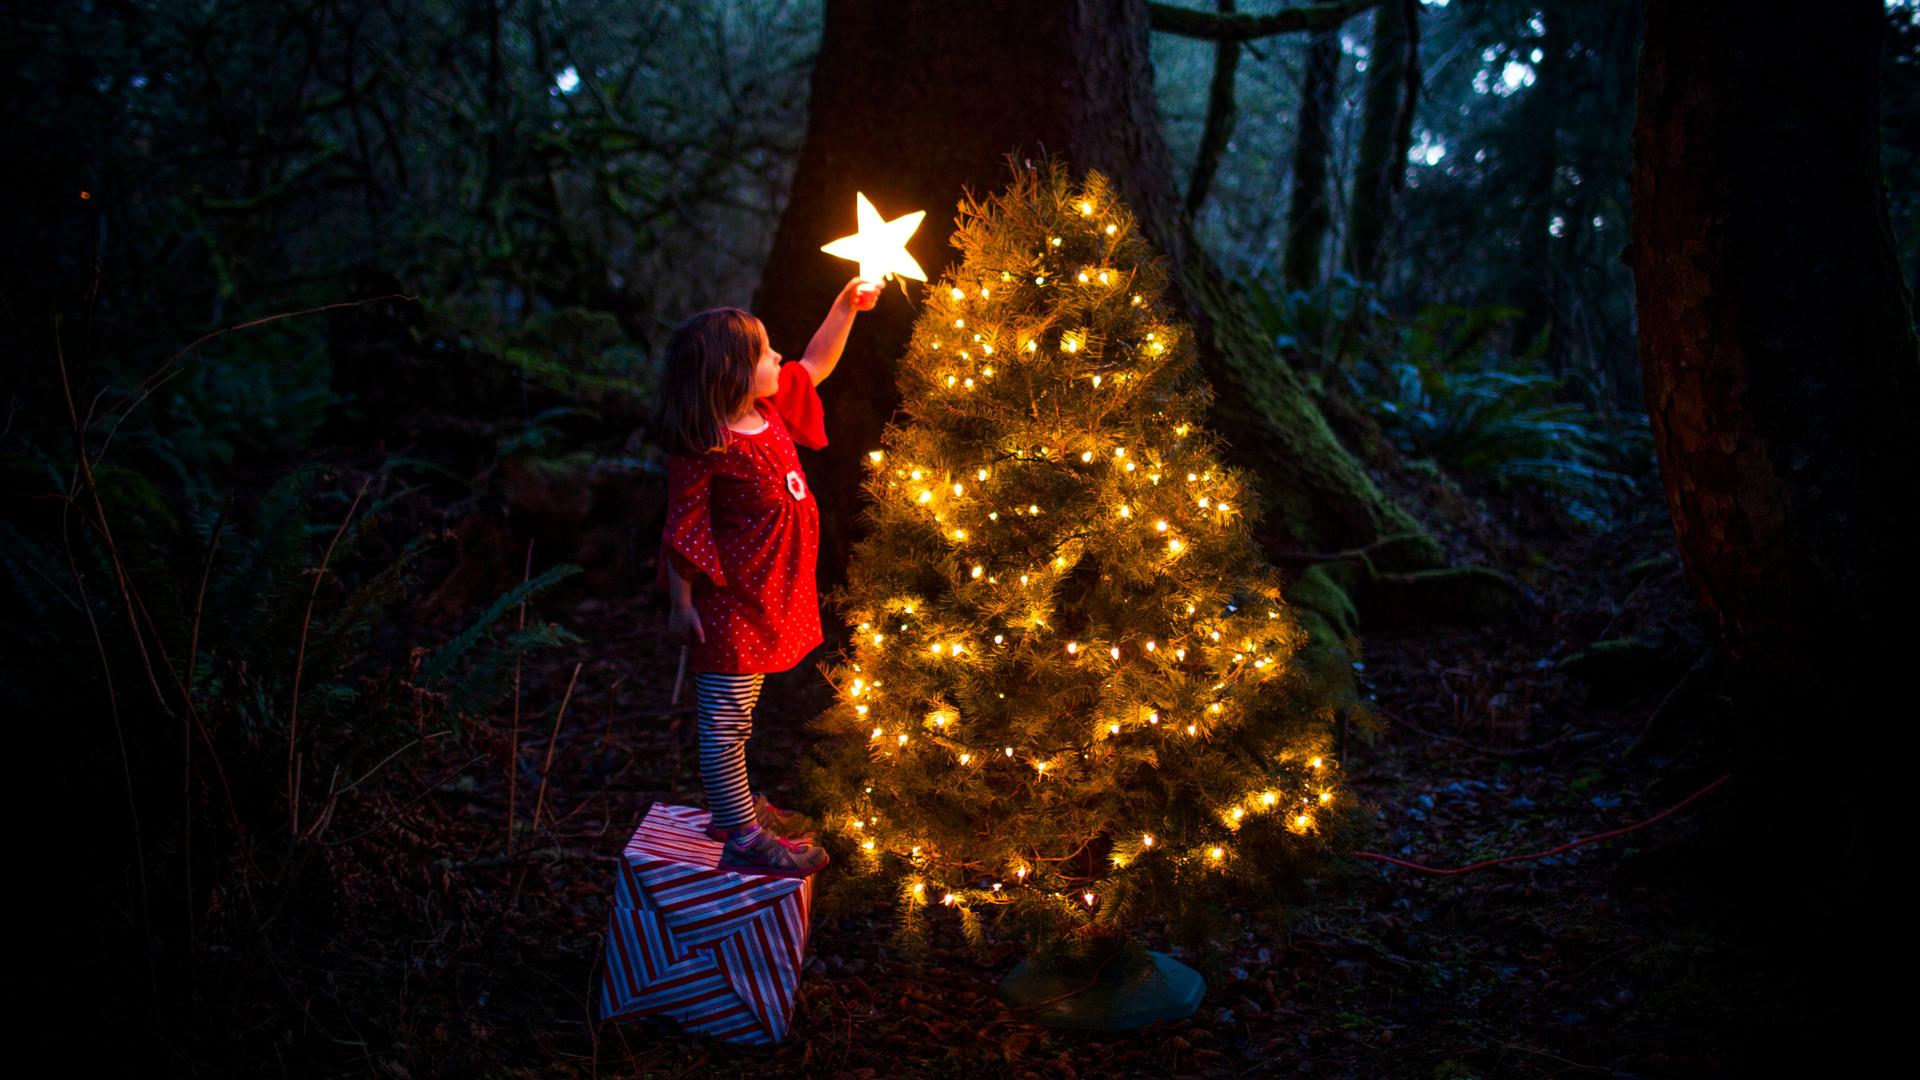 Ein kleines Mädchen in einem roten Kleid steht auf einem Paket mitten im Wald vor einem mit Kerzen erleuchteten Tannenbaum und versucht einen strahlenden Stern auf die Spitze zu setzen.